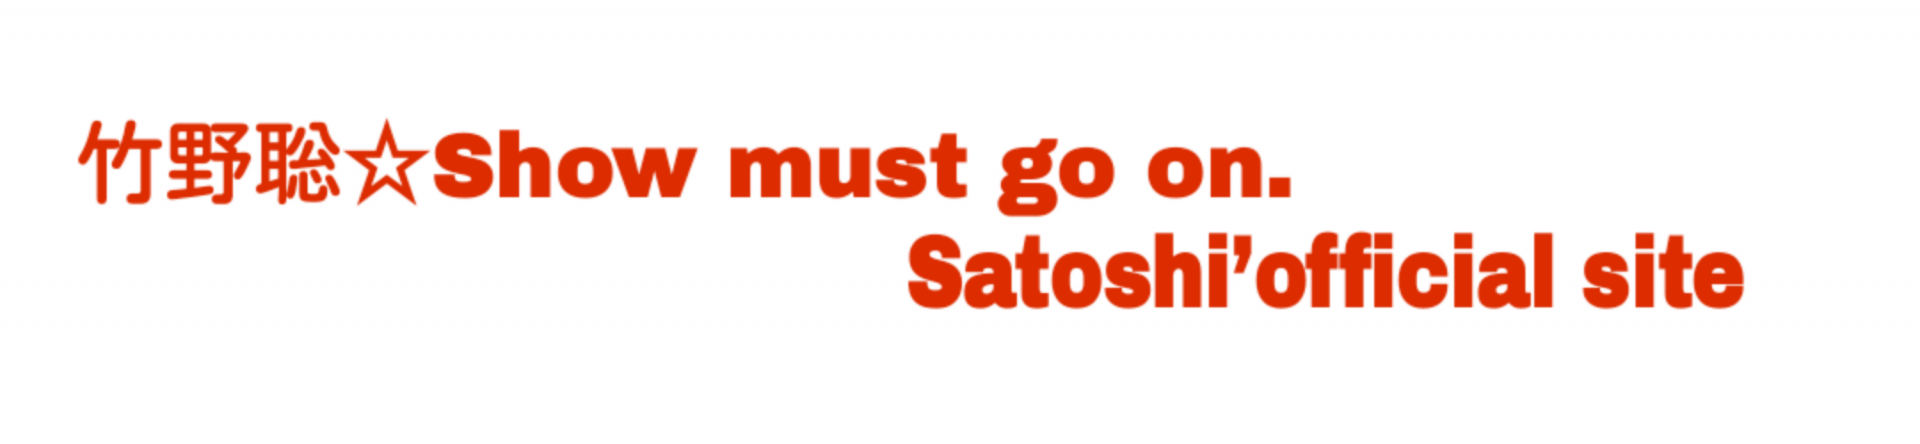 竹野聡オフィシャルサイト☆Show must go on. Satoshi’official site